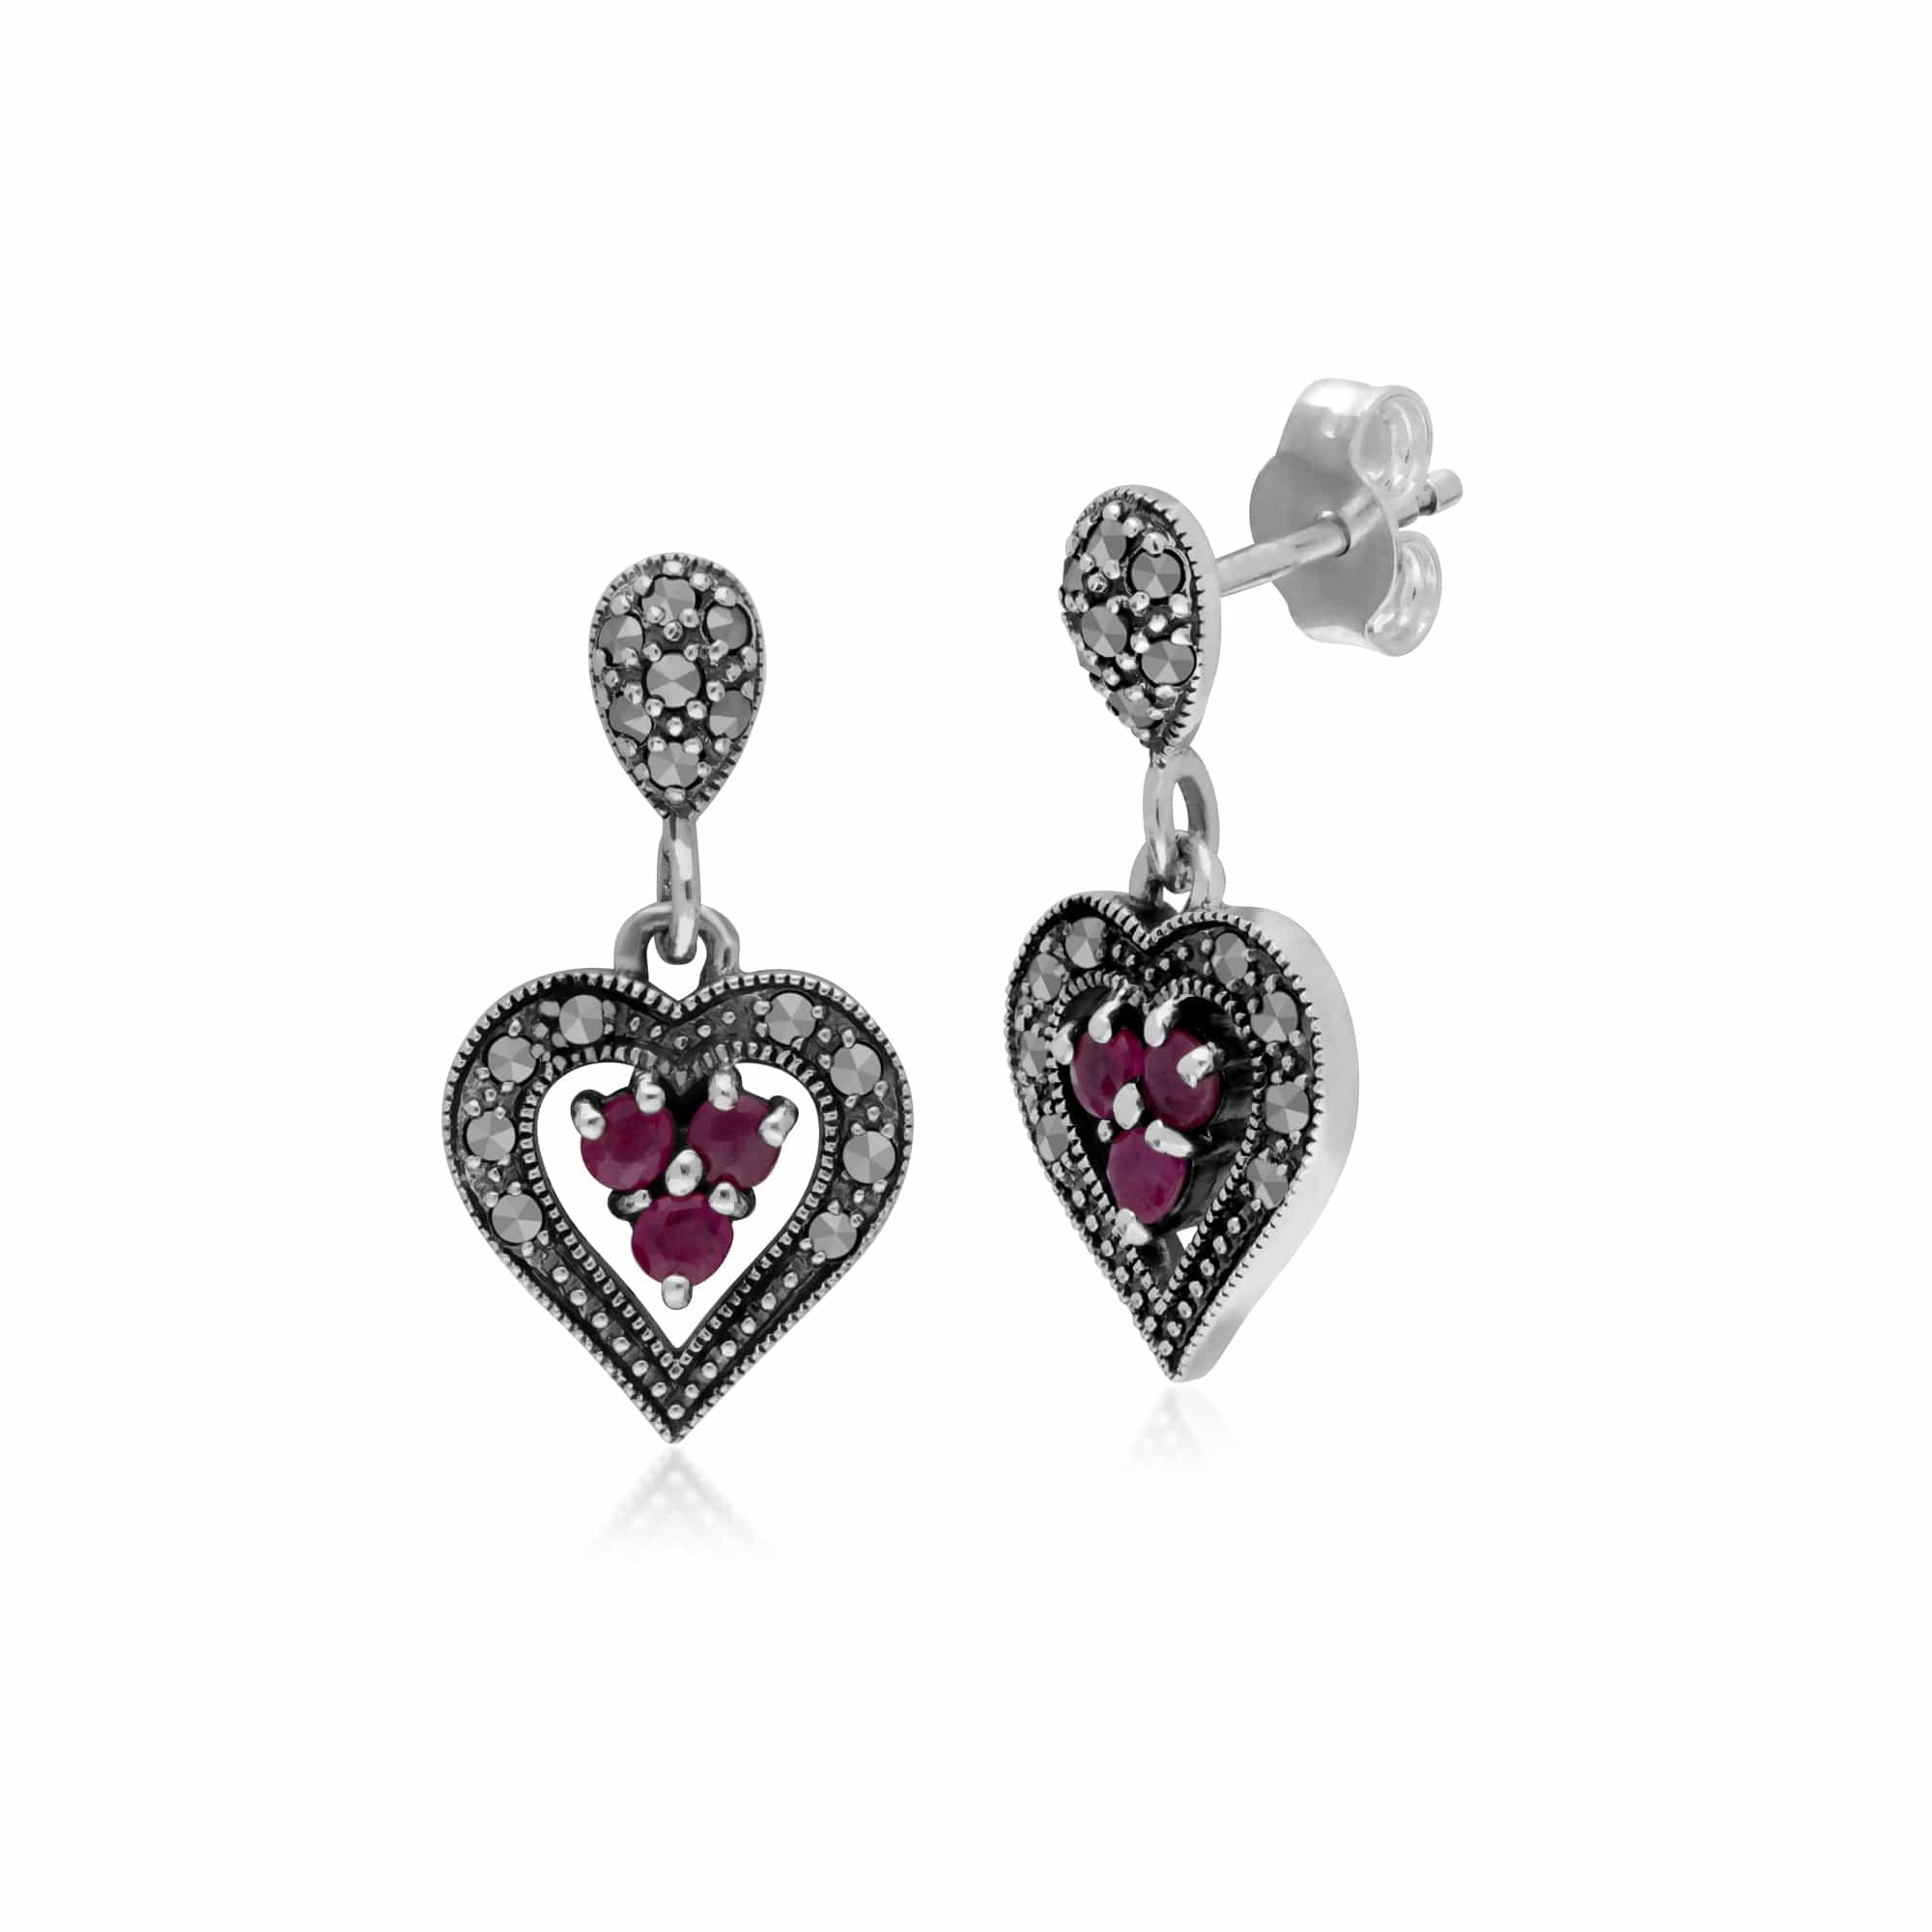 Art Deco Style  Round Ruby & Marcasite Heart Drop Earrings in 925 Sterling Silver - Gemondo